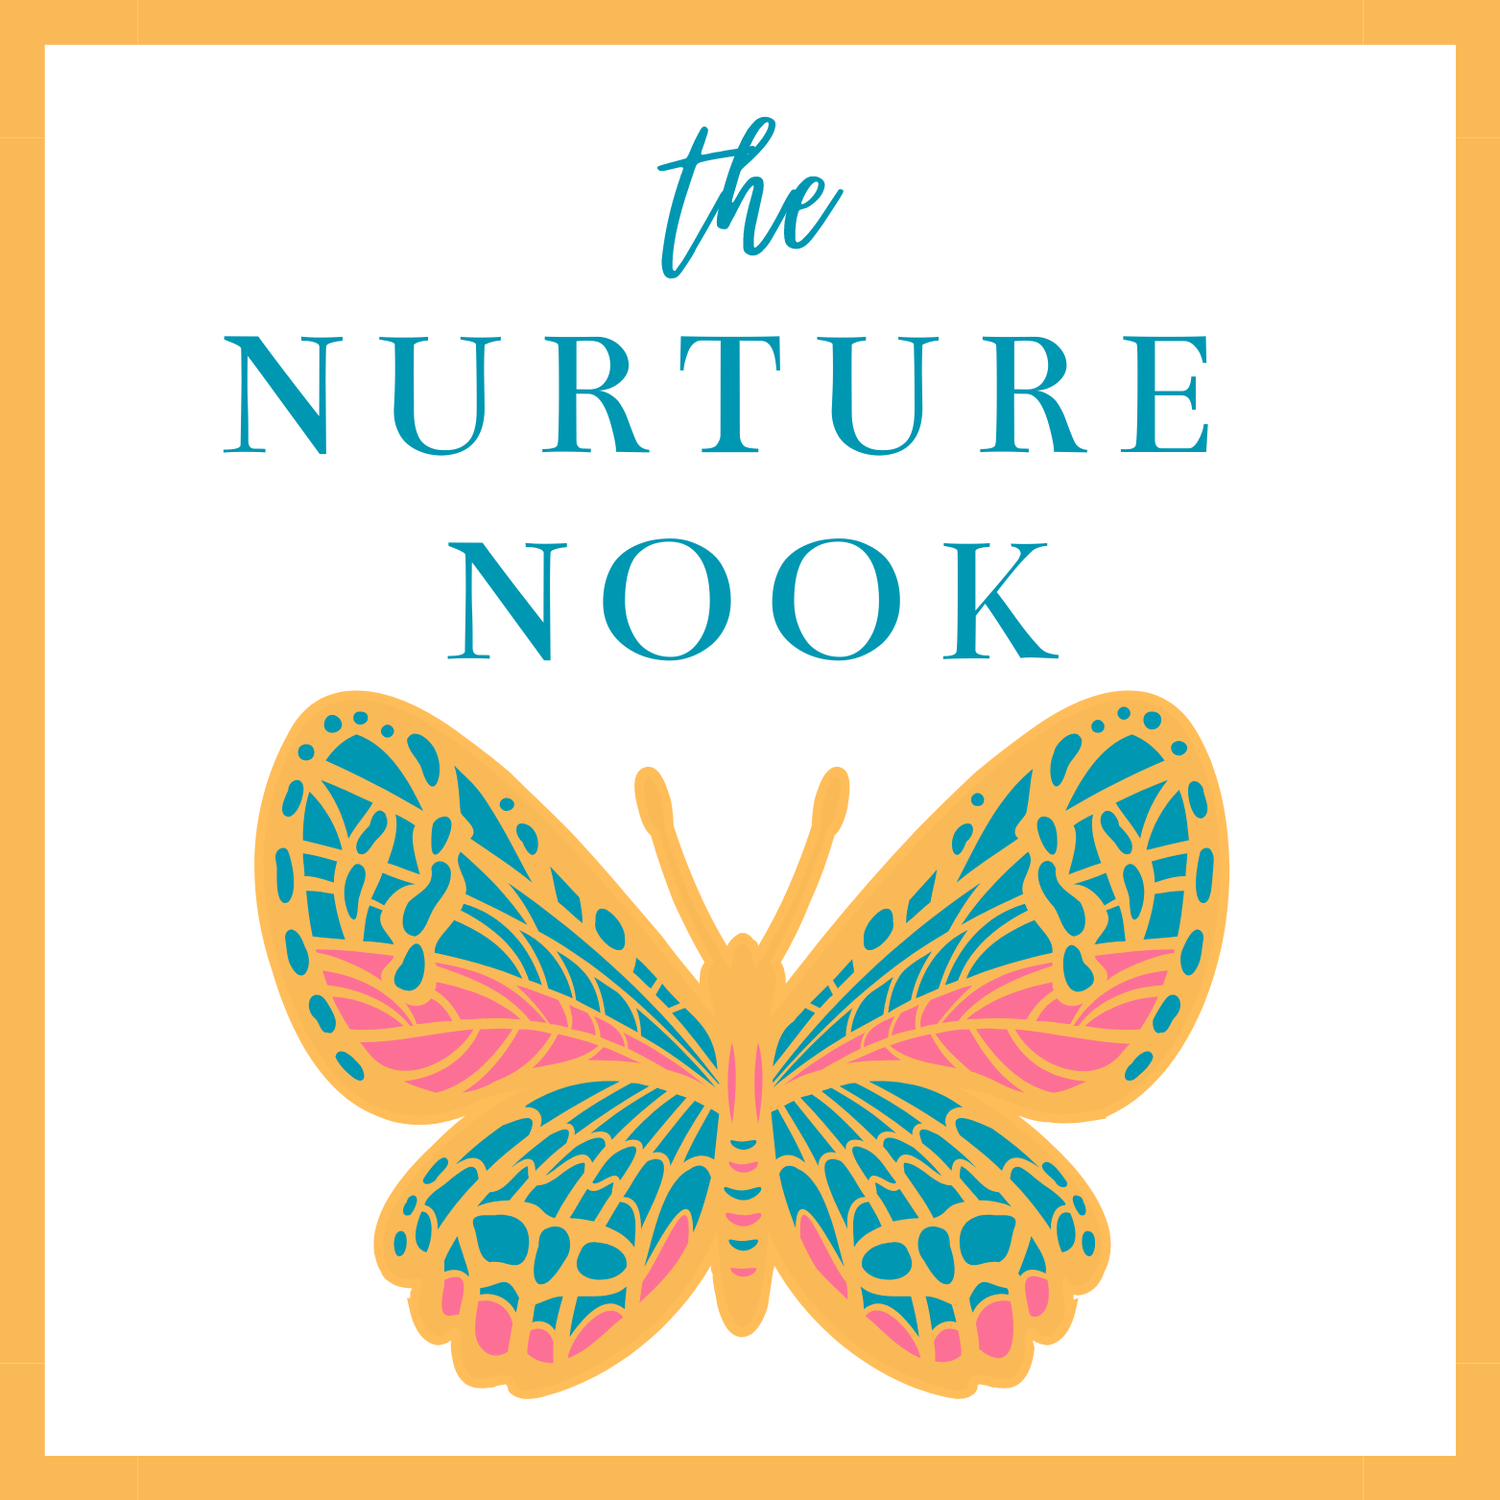 The Nurture Nook